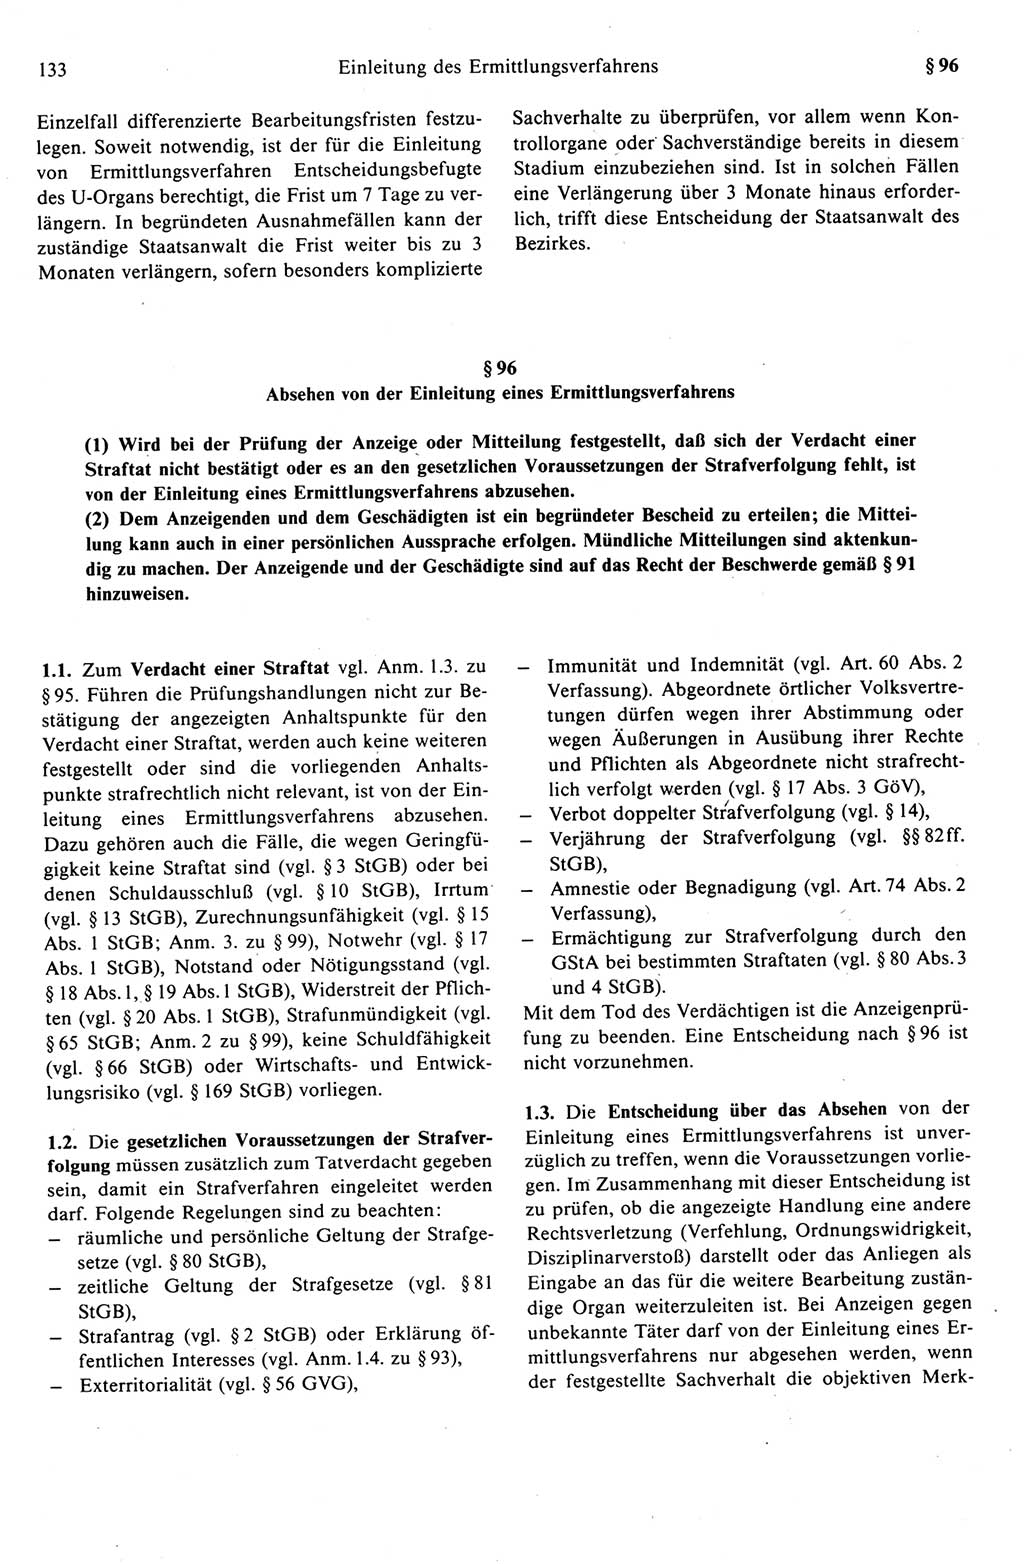 Strafprozeßrecht der DDR (Deutsche Demokratische Republik), Kommentar zur Strafprozeßordnung (StPO) 1989, Seite 133 (Strafprozeßr. DDR Komm. StPO 1989, S. 133)